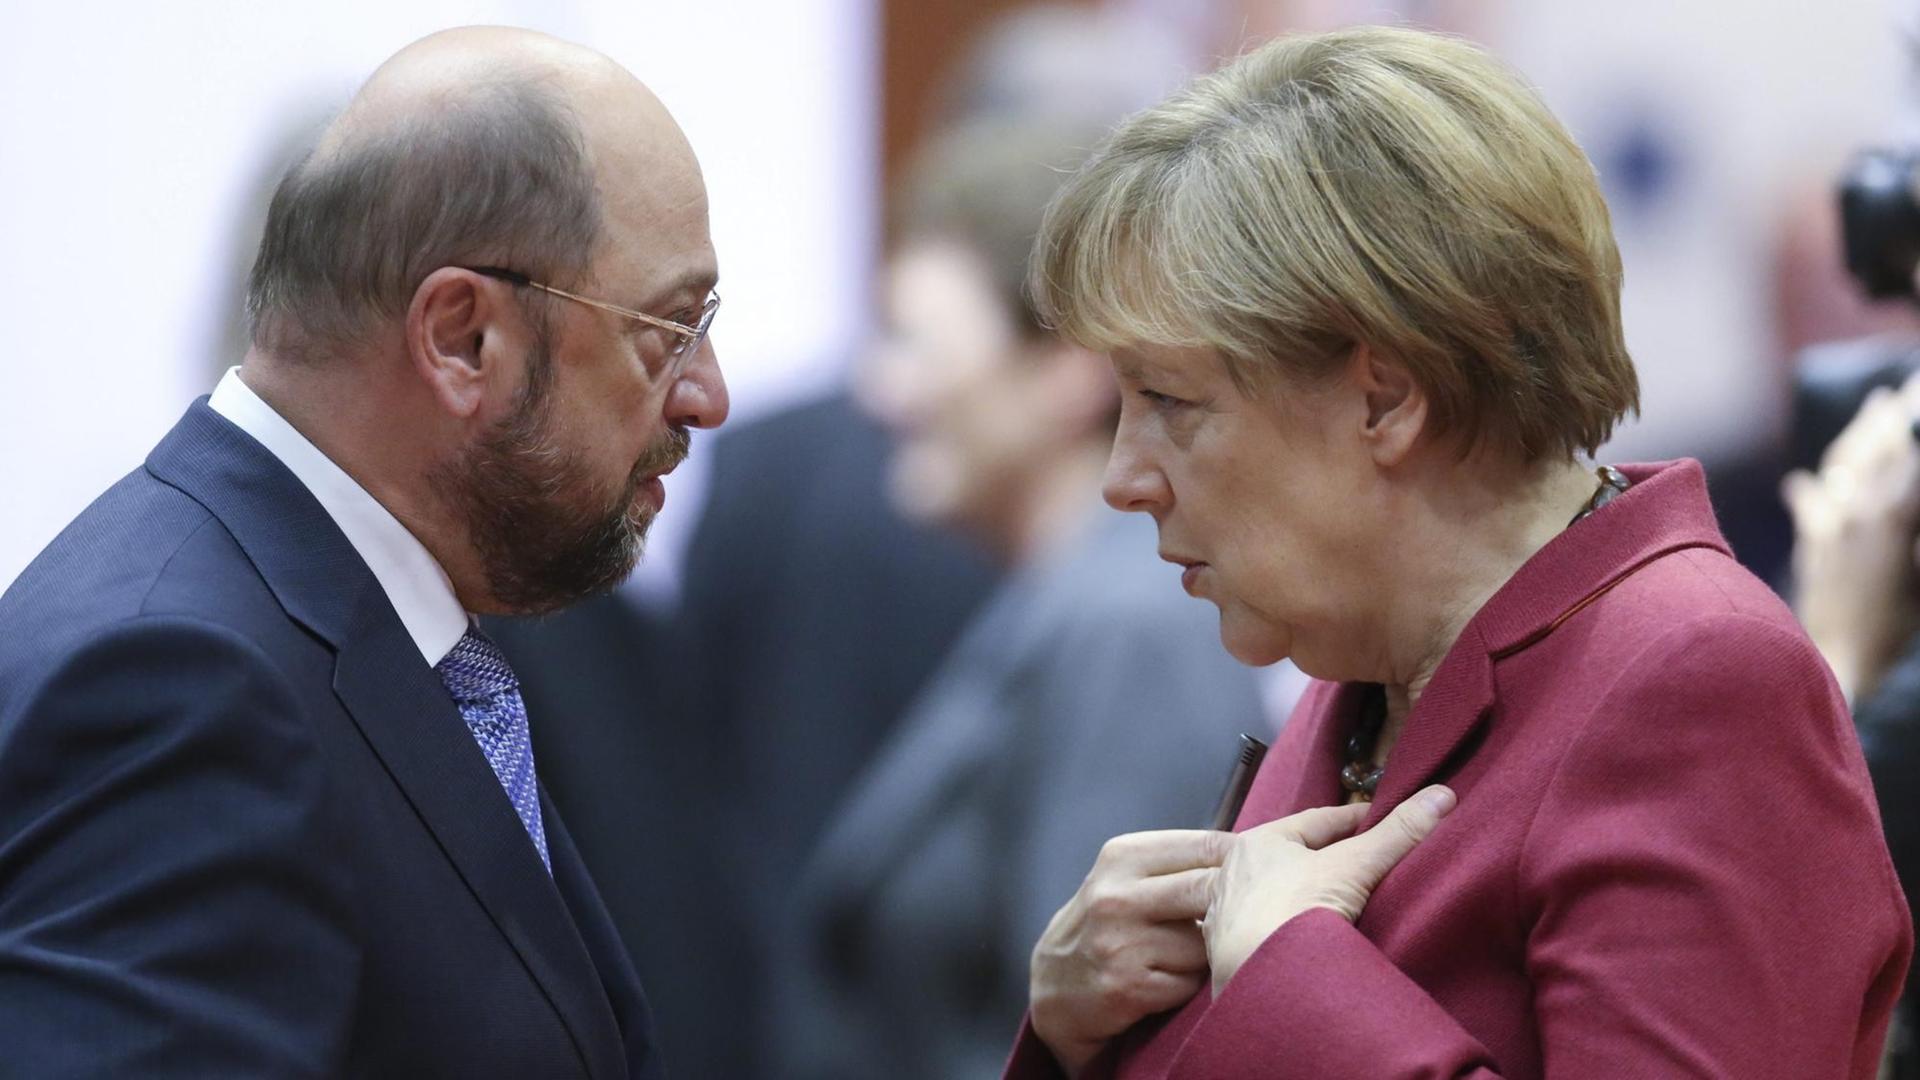 Kanzlerkandidat Martin Schulz (SPD) und Bundeskanzlerin Angela Merkel (CDU) im Profil, sie sehen sich an